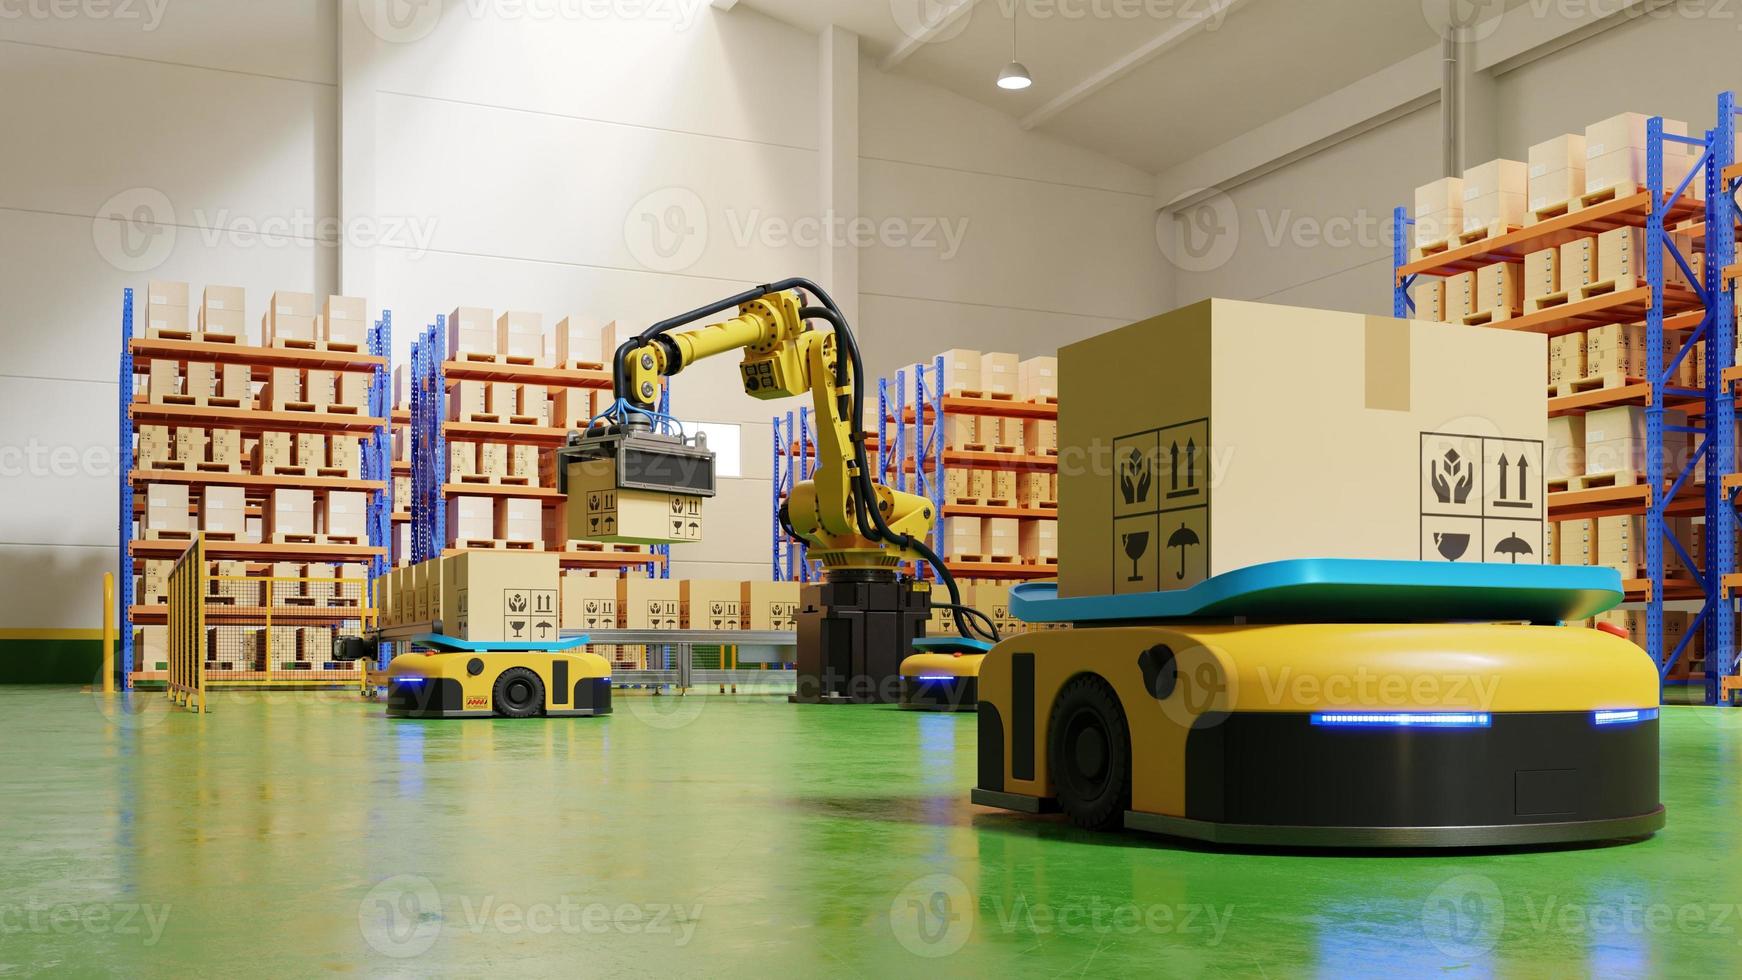 fabrikautomation mit agv und roboterarm im transport, um den transport sicherer zu machen. foto